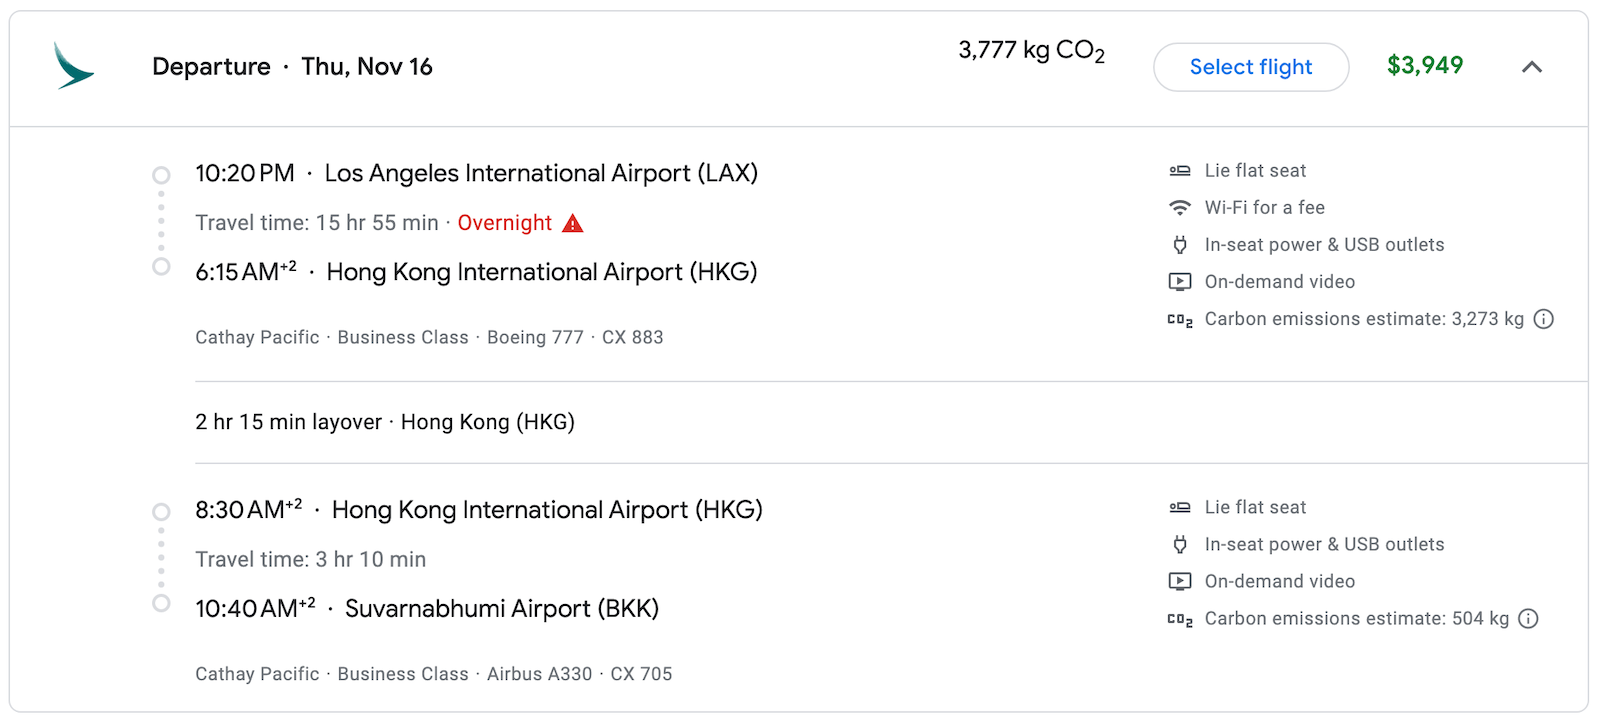 Itinerary and ticket price from Los Angeles to Bangkok via Hong Kong